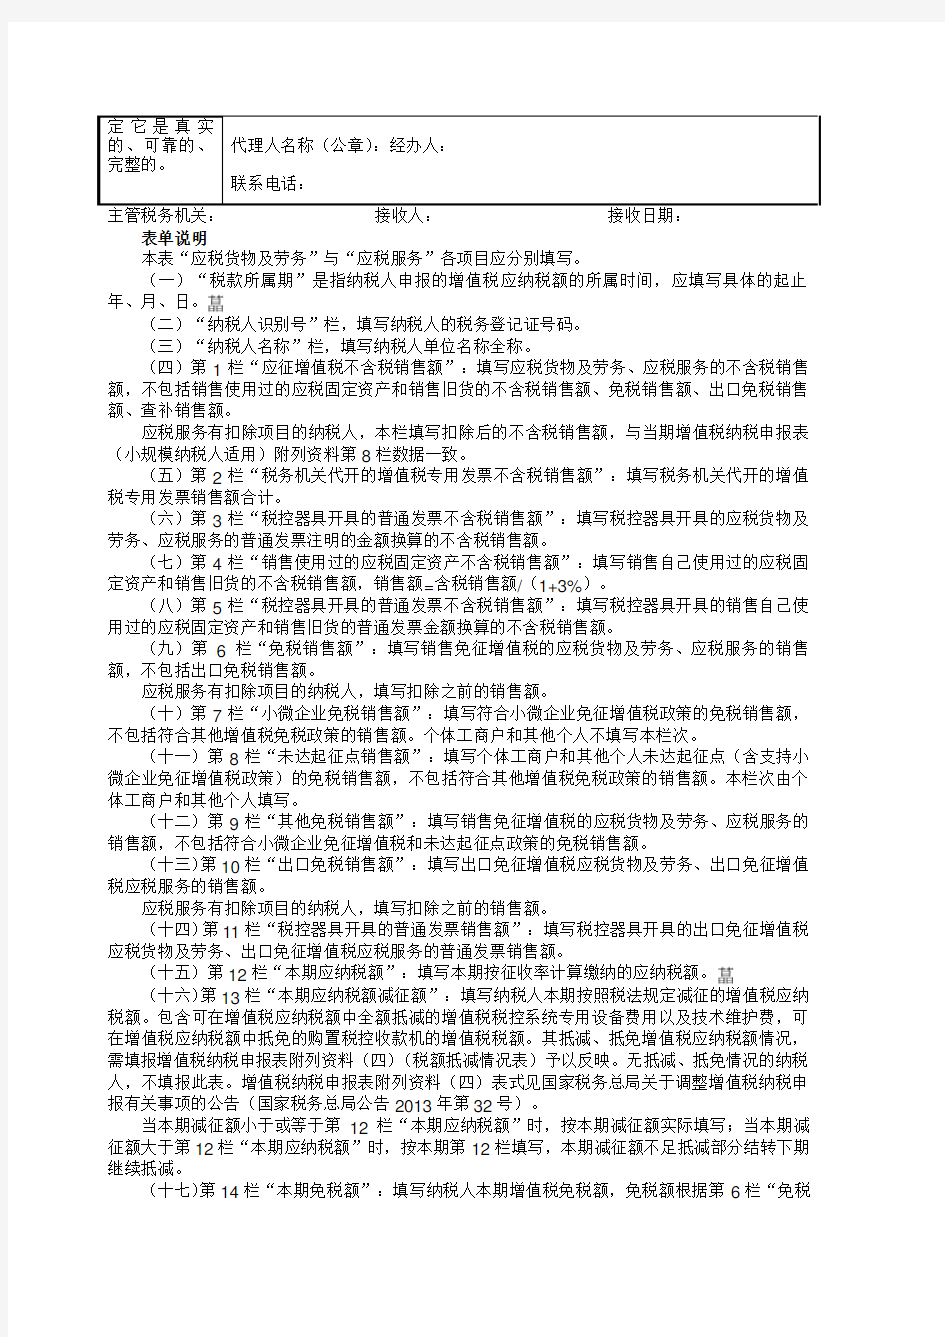 内蒙古呼和浩特国家税务局增值税纳税申报表(小规模纳税人适用)